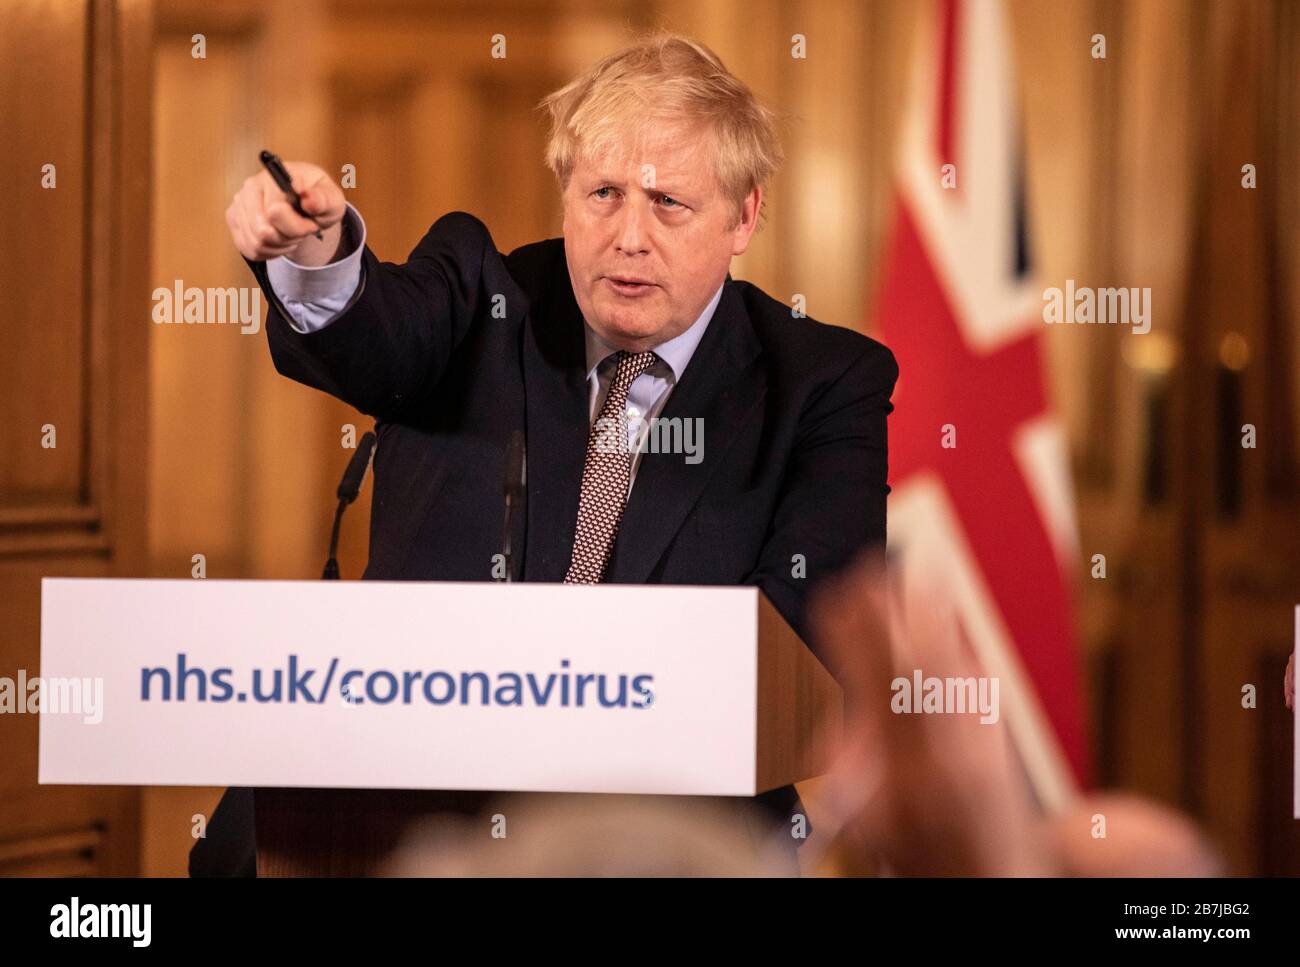 Il primo ministro Boris Johnson ha parlato ad un briefing mediatico a Downing Street, Londra, su Coronavirus (COVID-19) dopo aver partecipato alla riunione della COBRA del governo. Data immagine: Lunedì 16 marzo 2020. Vedere PA storia DI SALUTE Coronavirus. Il credito fotografico dovrebbe essere: Richard Pohle/The Times/PA Wire Foto Stock